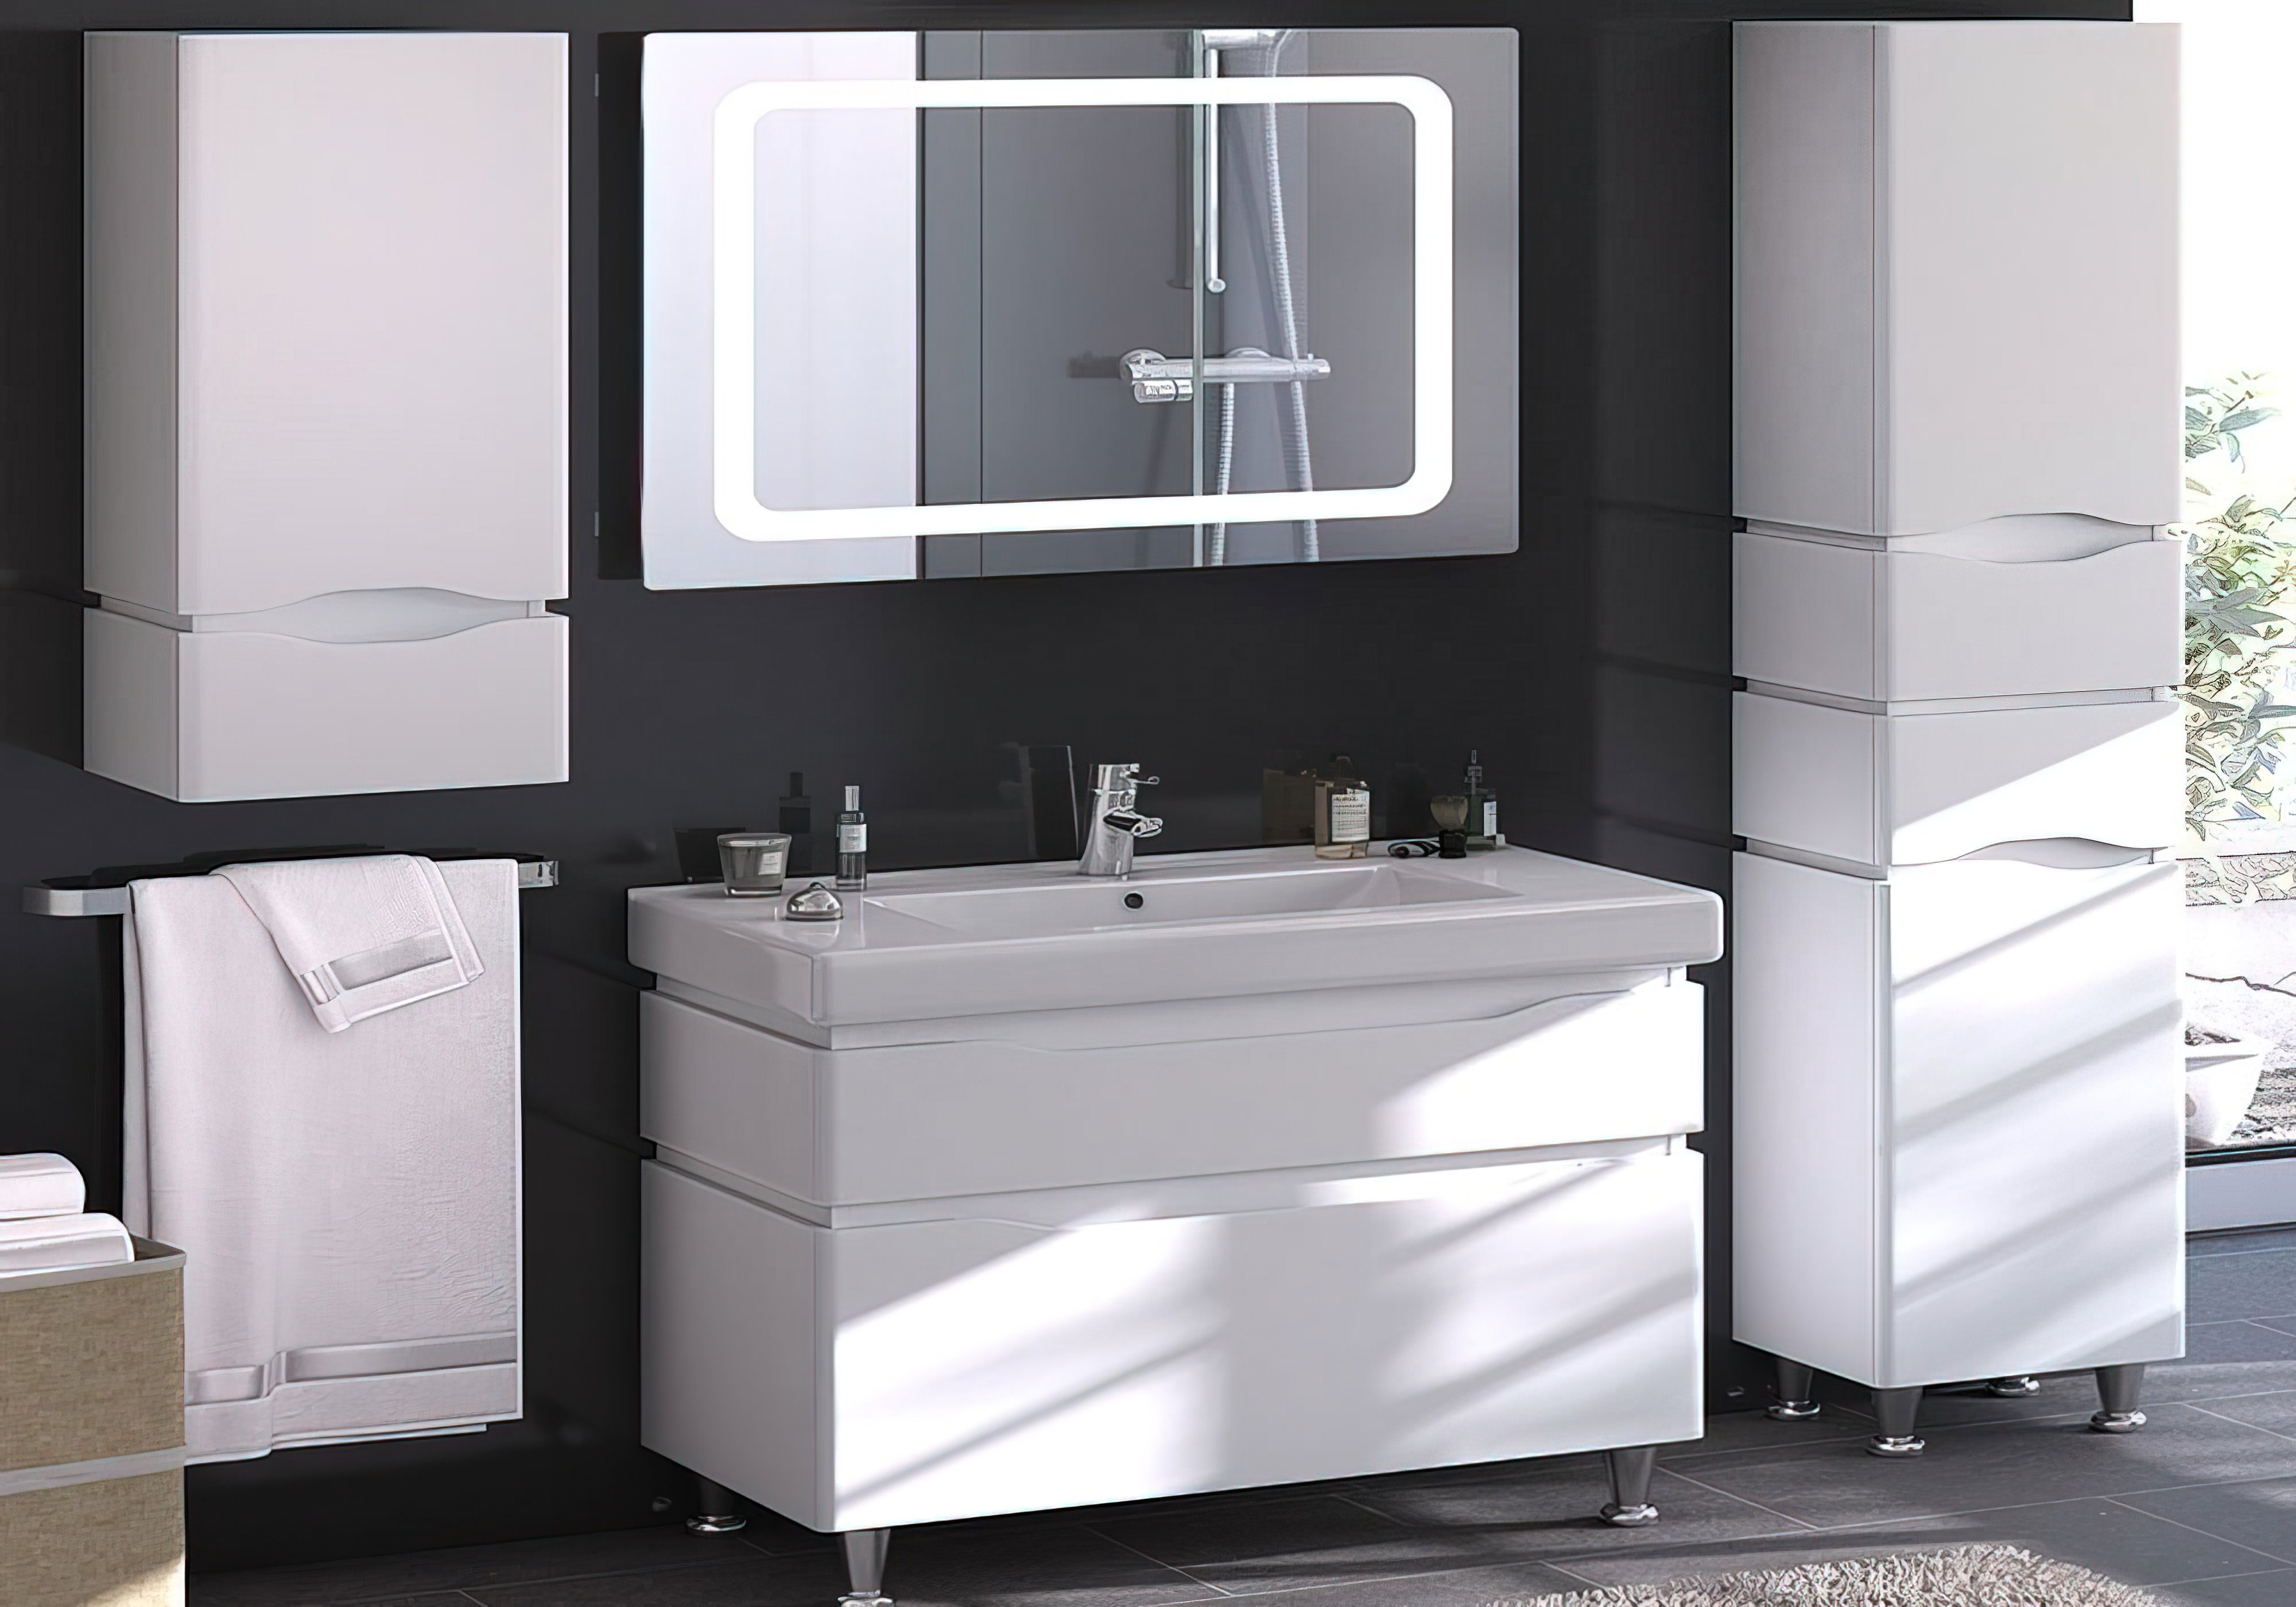  Купить Мебель для ванной комнаты Пенал для ванной "Alessa 35" Санверк